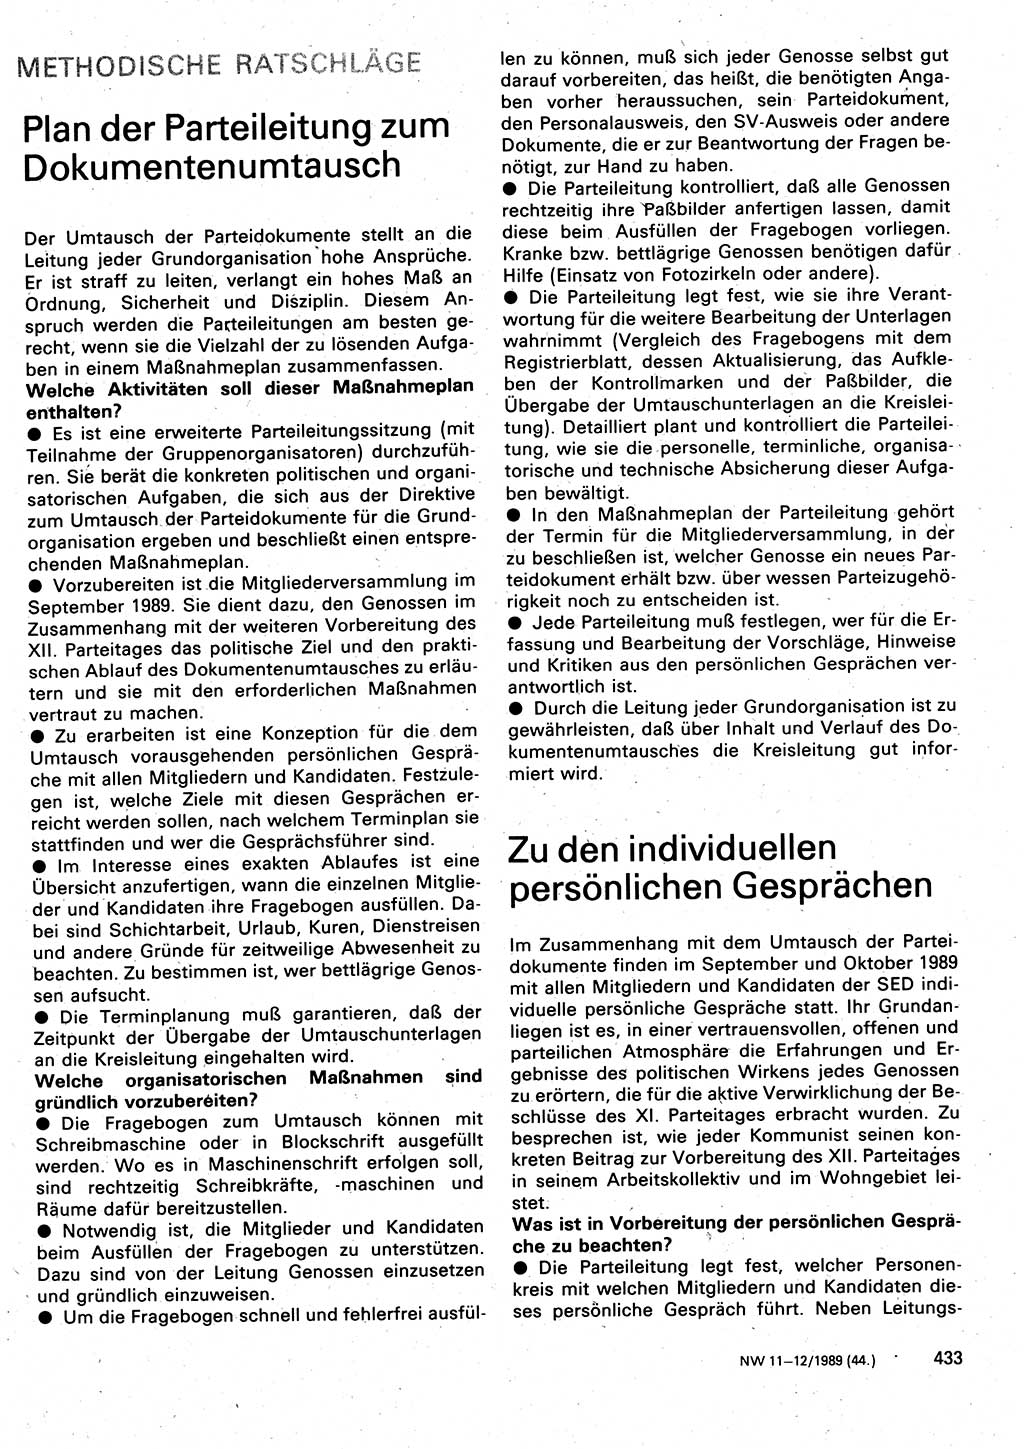 Neuer Weg (NW), Organ des Zentralkomitees (ZK) der SED (Sozialistische Einheitspartei Deutschlands) für Fragen des Parteilebens, 44. Jahrgang [Deutsche Demokratische Republik (DDR)] 1989, Seite 433 (NW ZK SED DDR 1989, S. 433)